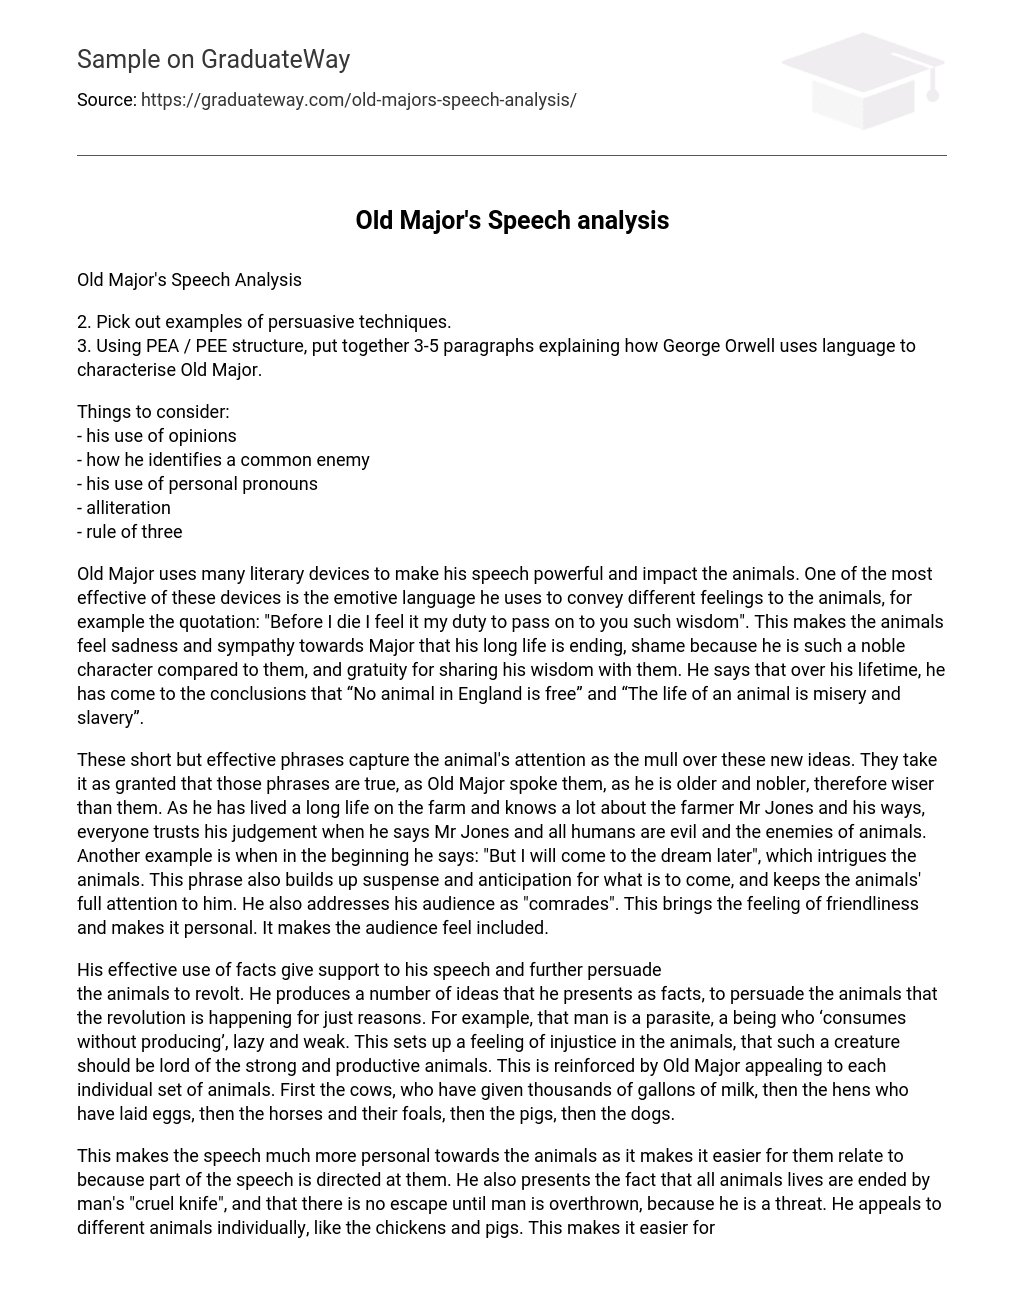 Old Major’s Speech analysis